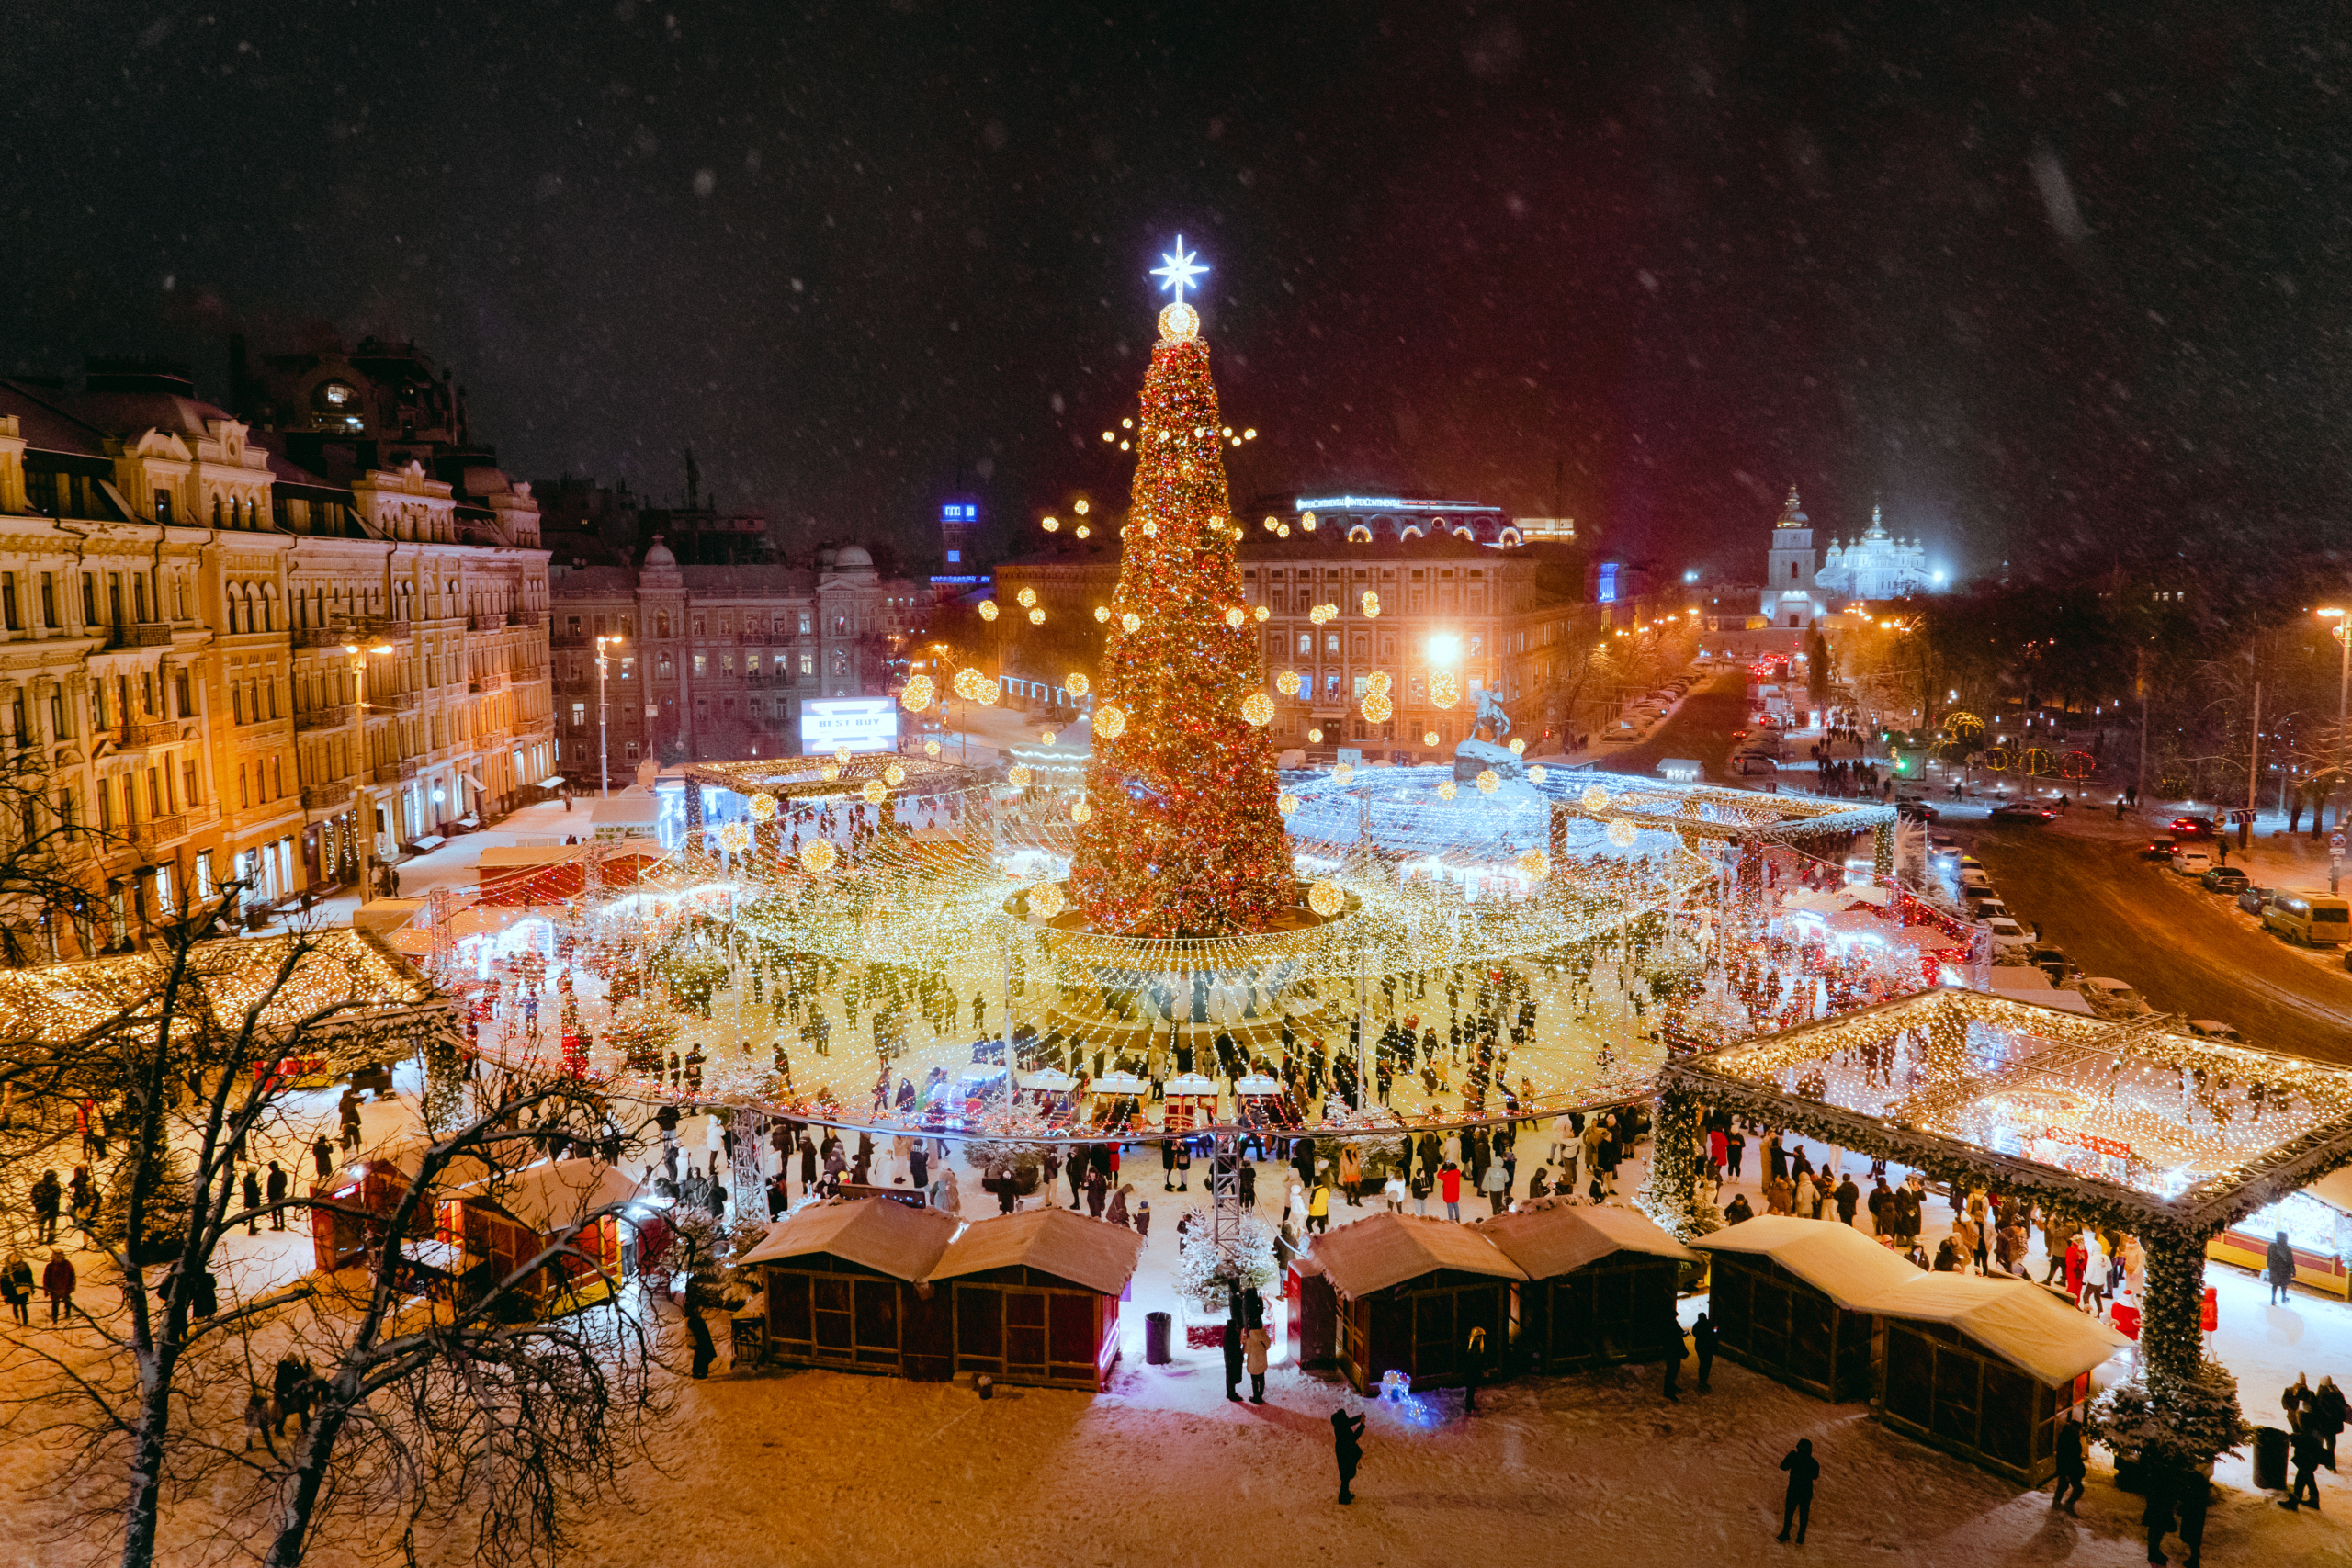 🎄 Створили безкоштовний фотобанк світлин столиці на новорічні свята